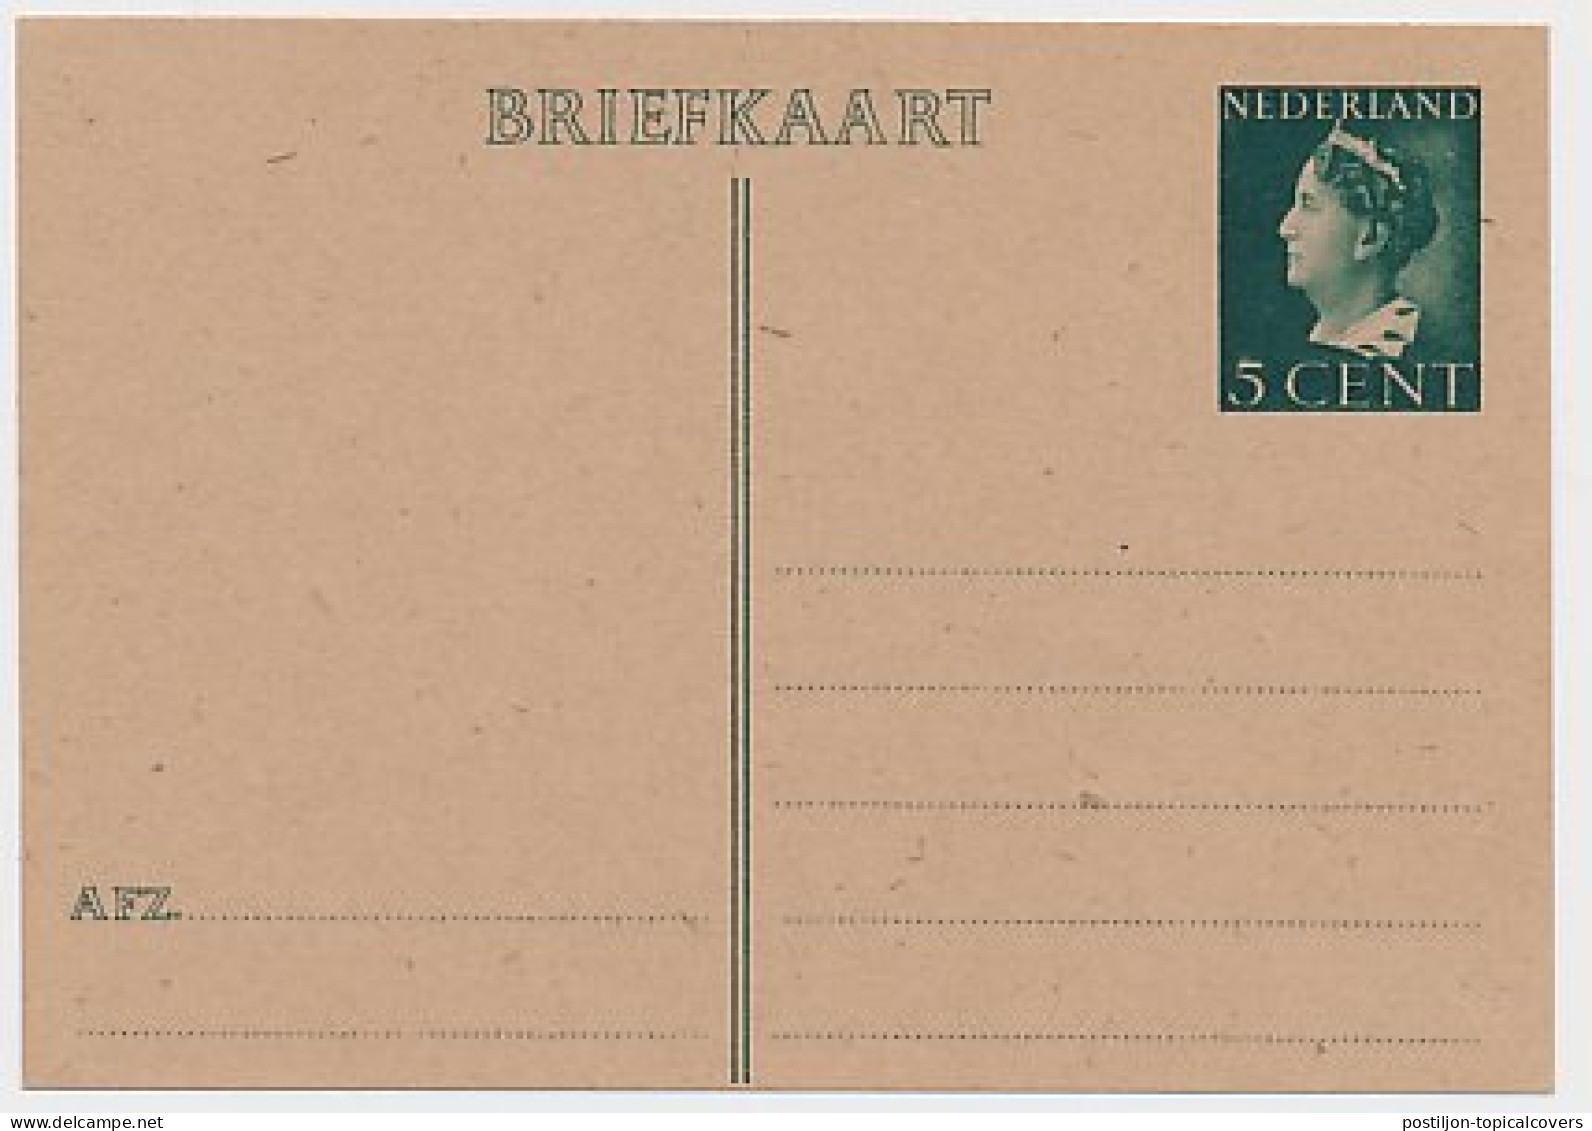 Briefkaart G. 282 A - Postwaardestukken